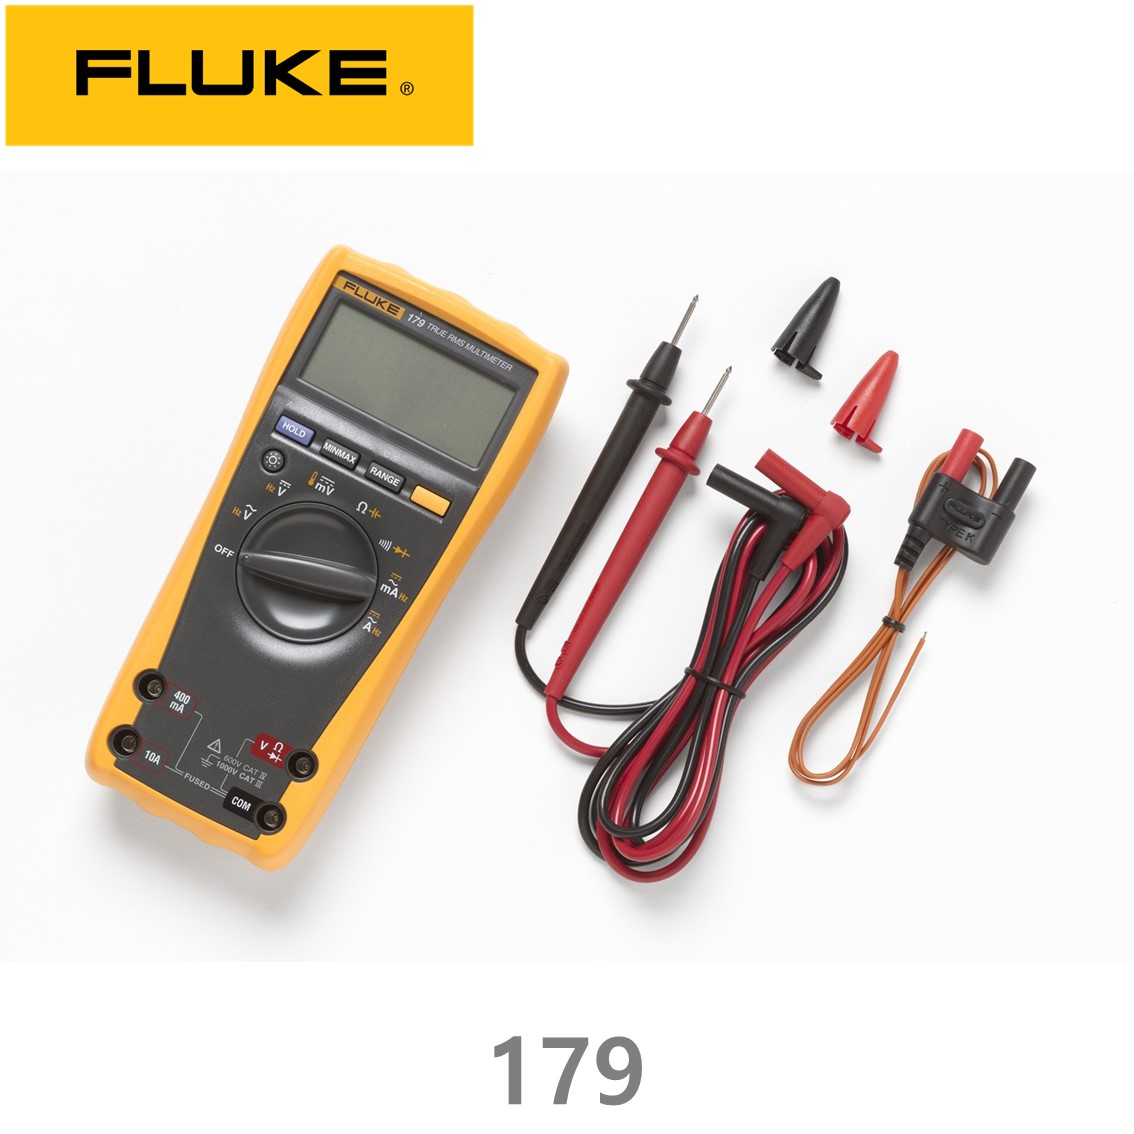 [ FLUKE 179 ] 정품 플루크 179 디지털멀티미터, 테스터기